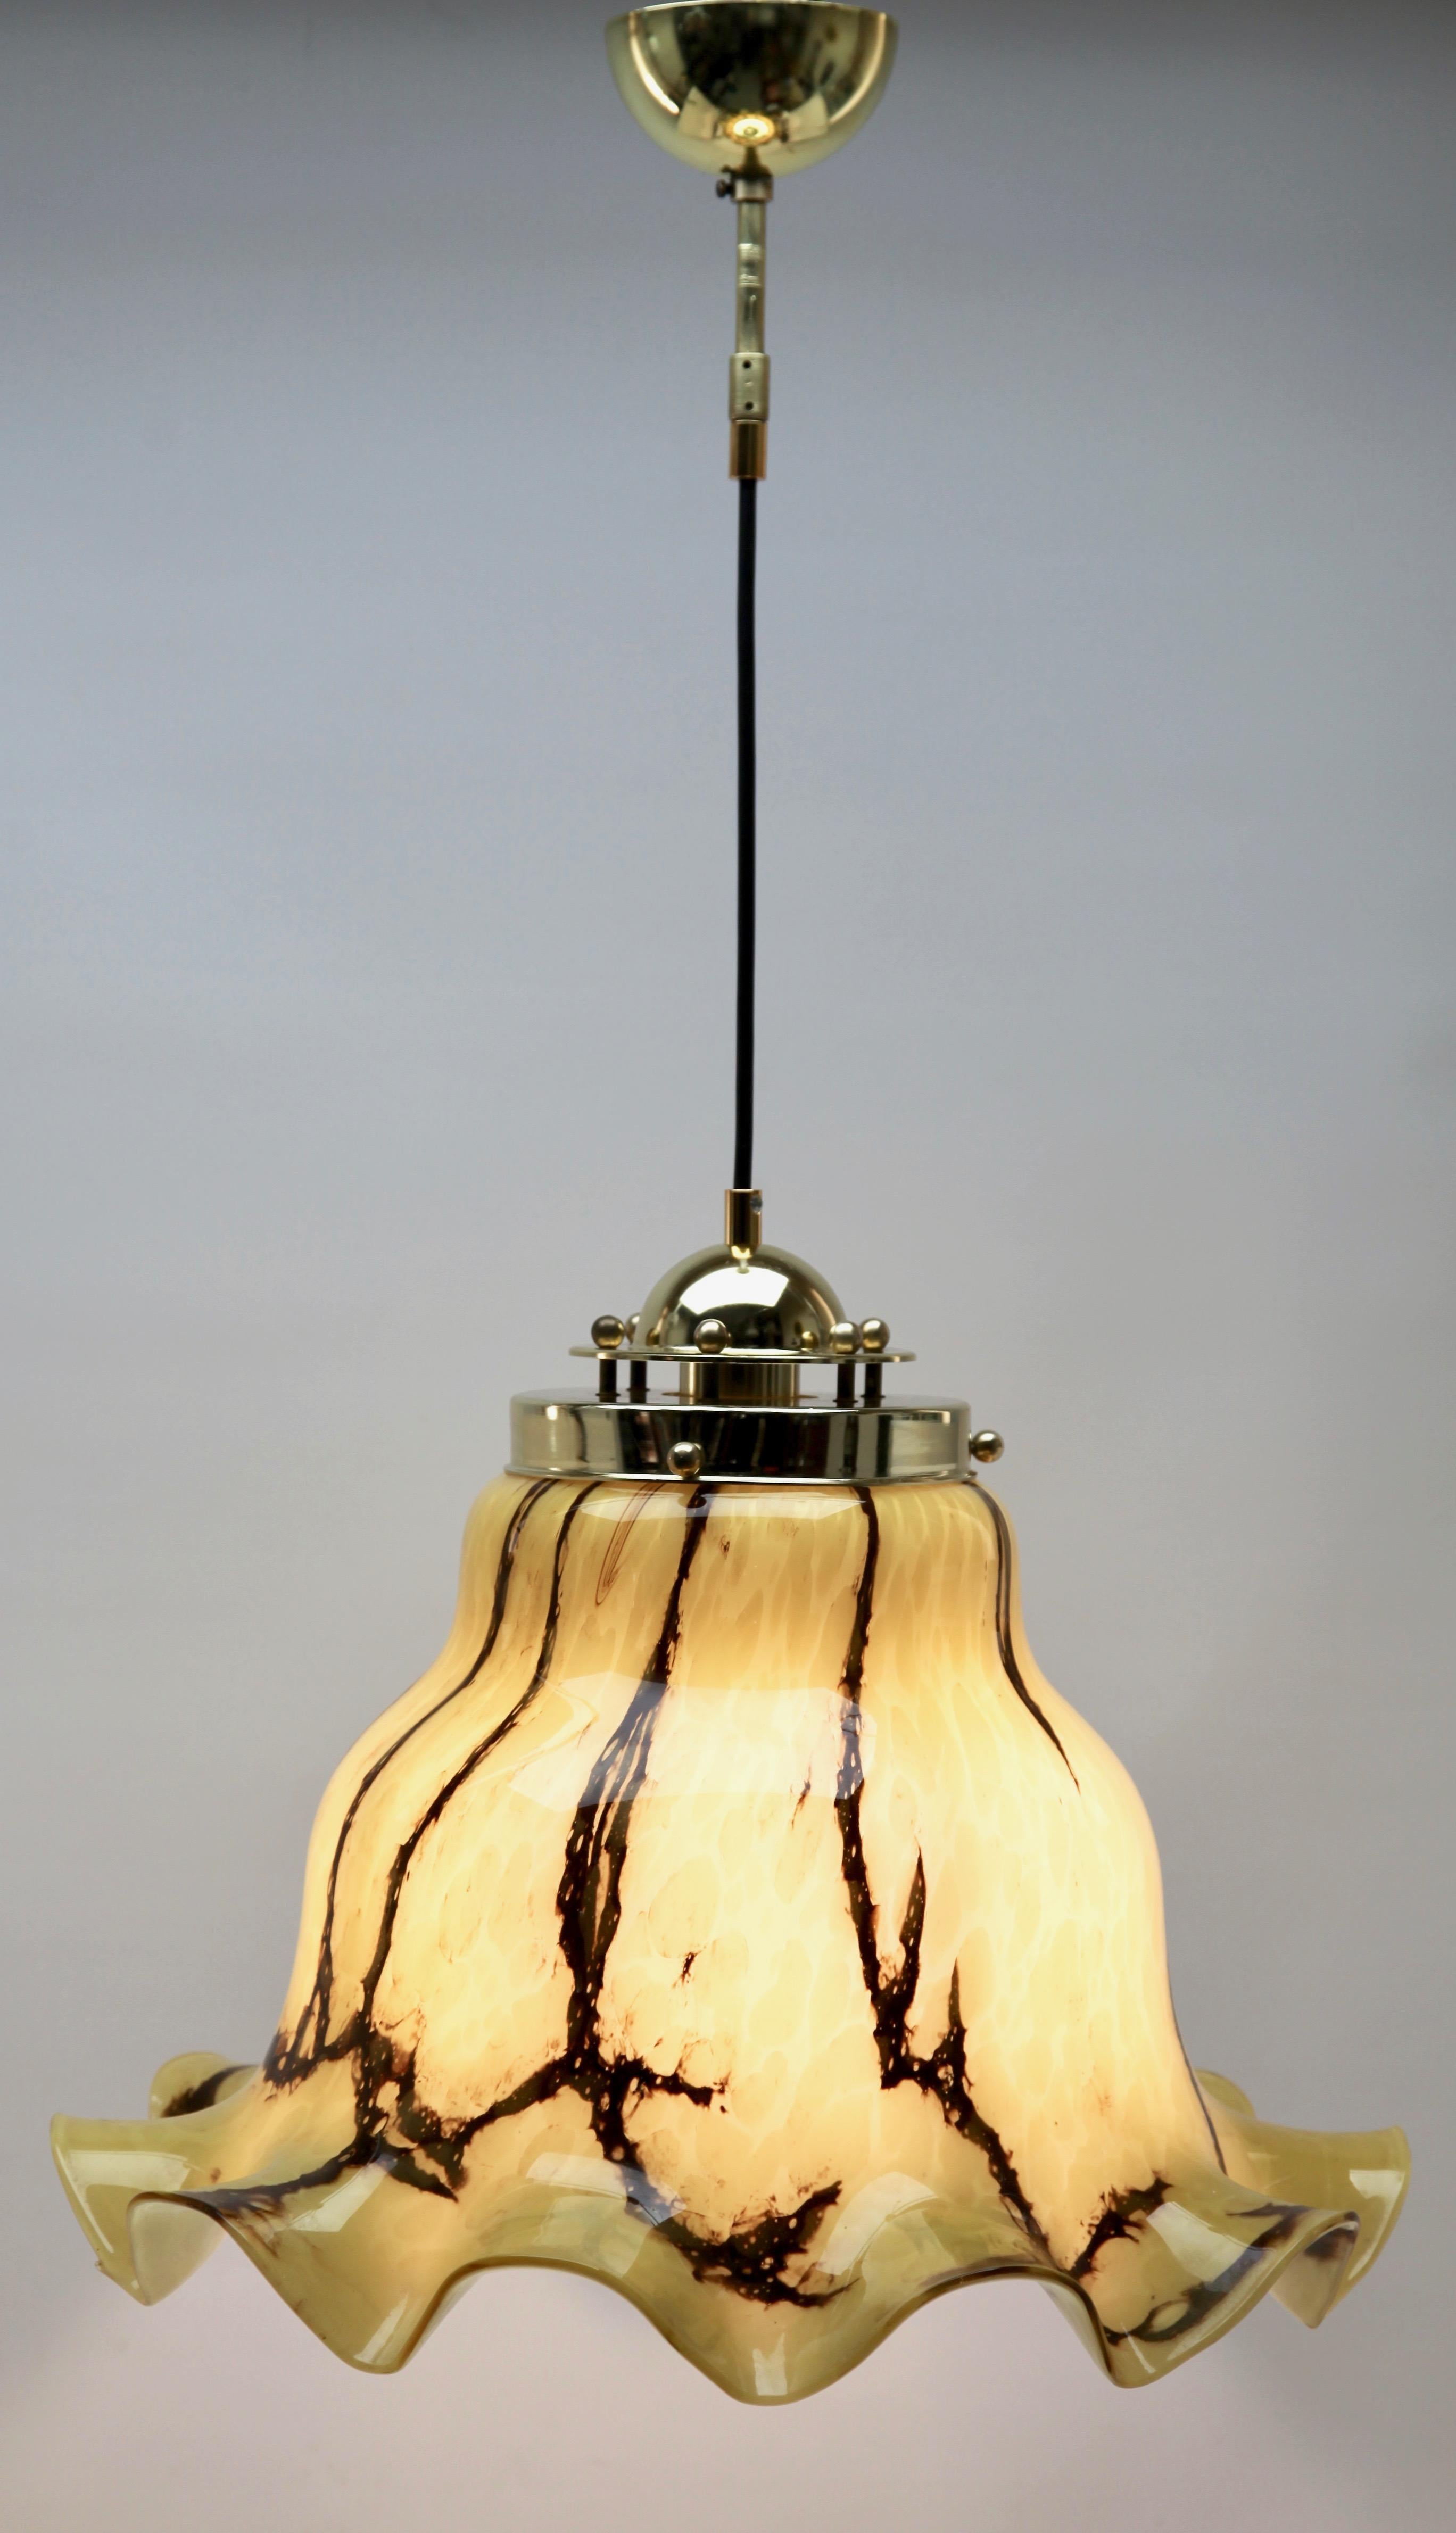 Vieille lampe suspendue de Peill & Putzler, Allemagne. Ce luminaire suspendu central est fabriqué à partir de verre soufflé à la main avec des nuages tourbillonnants spectaculaires de brun et de crème créant une sensation de nuage. 

La